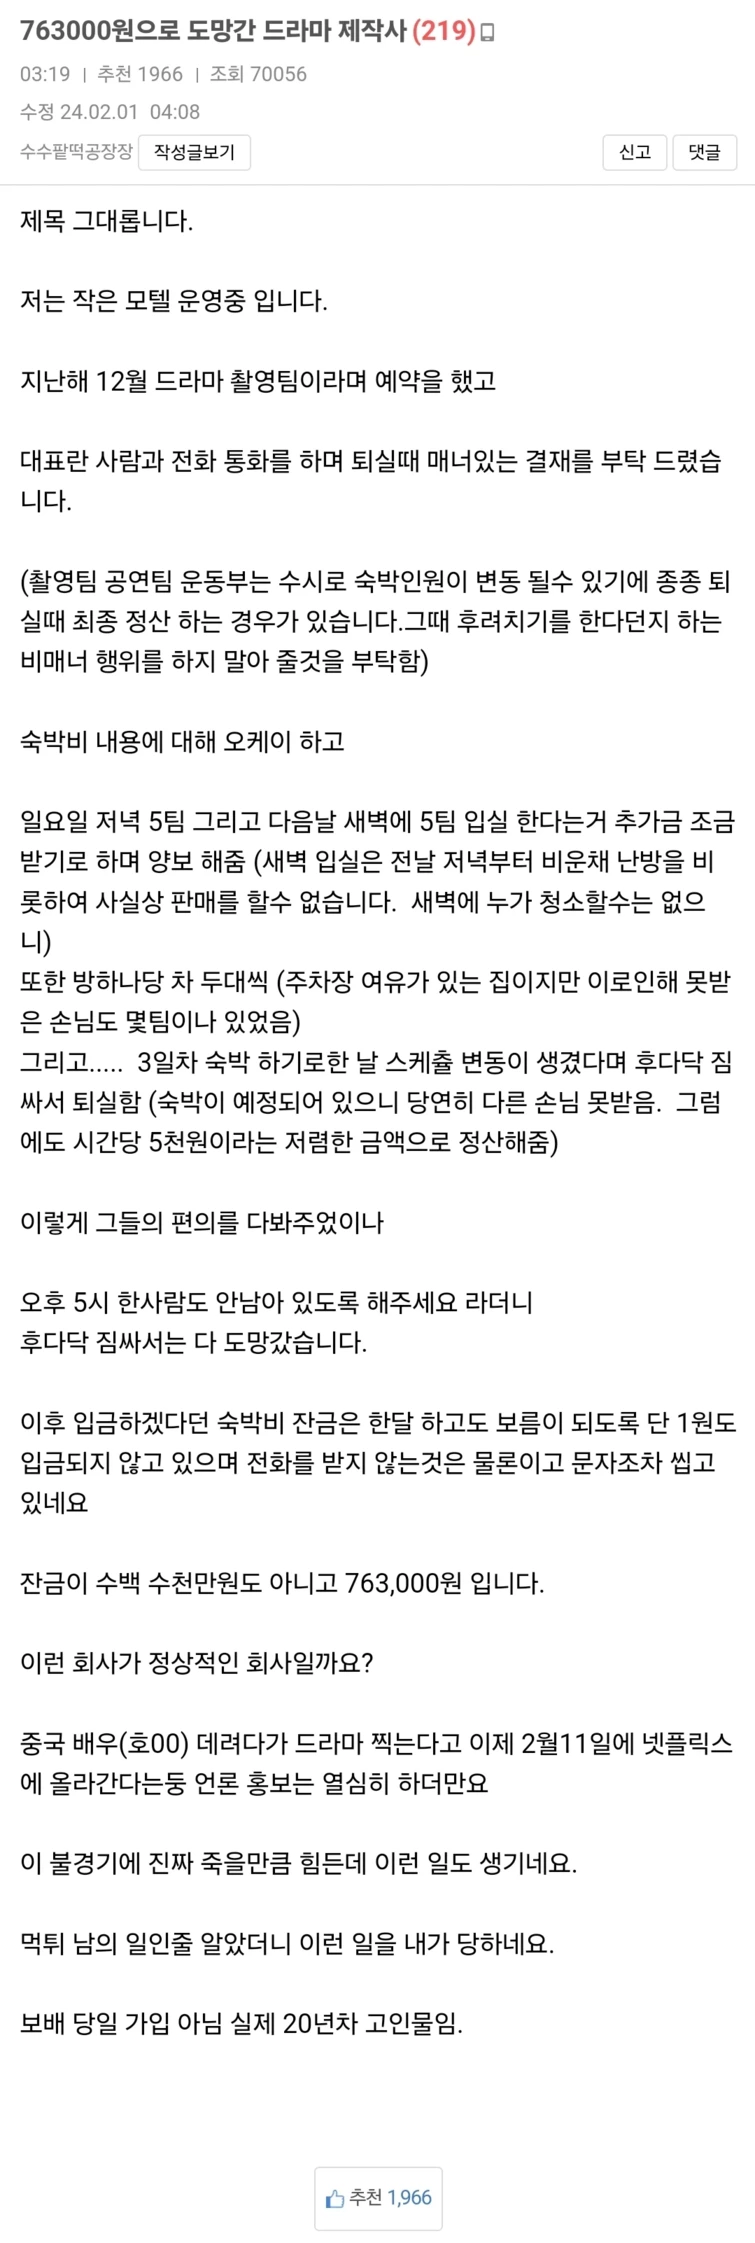 모텔 숙박비 763000원 떼어먹고 도망간 드라마 제작사 | 인스티즈